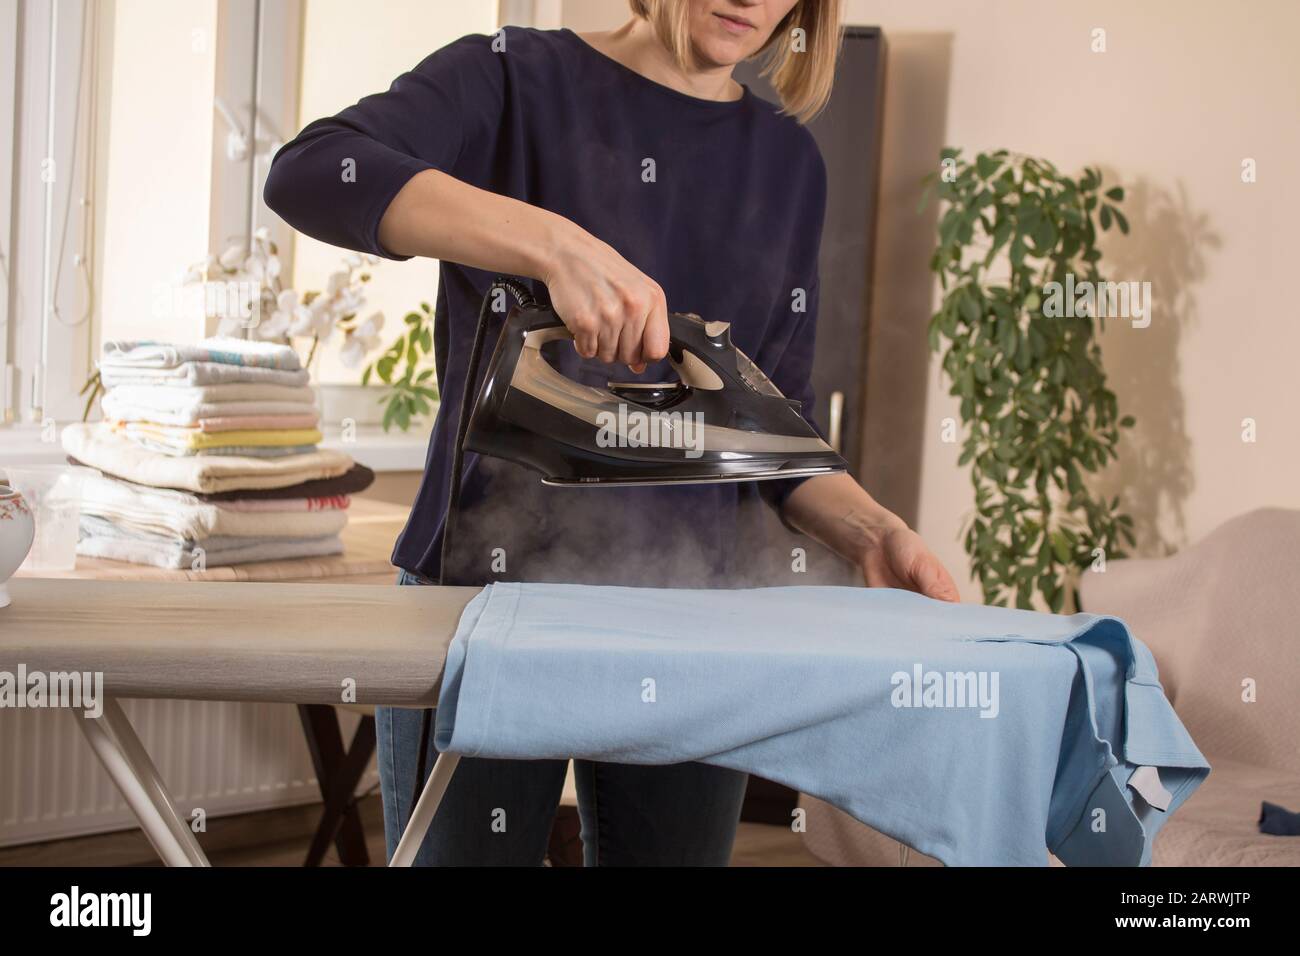 Die Frau hält ein Bügeleisen, aus dem Dampf austritt. Bügelkleidung auf  einem Bügelbrett. Gebügelte Kleidung liegt im Hintergrund auf dem Tisch  Stockfotografie - Alamy